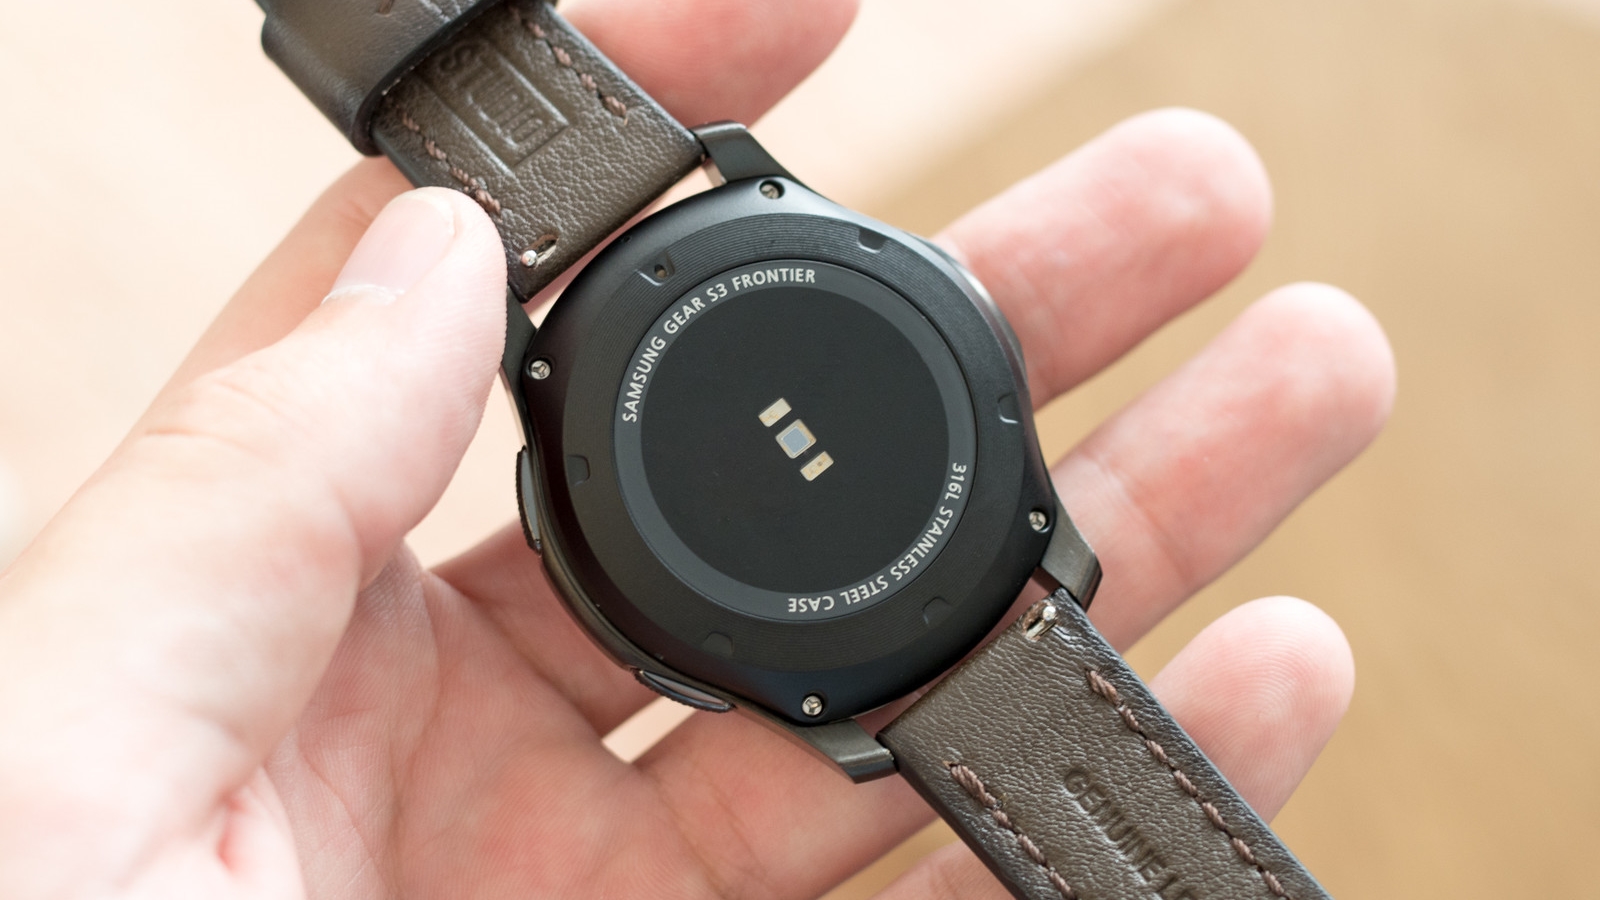 Samsung, Xiaomi và Asus đồng loạt ra smartwatch mới